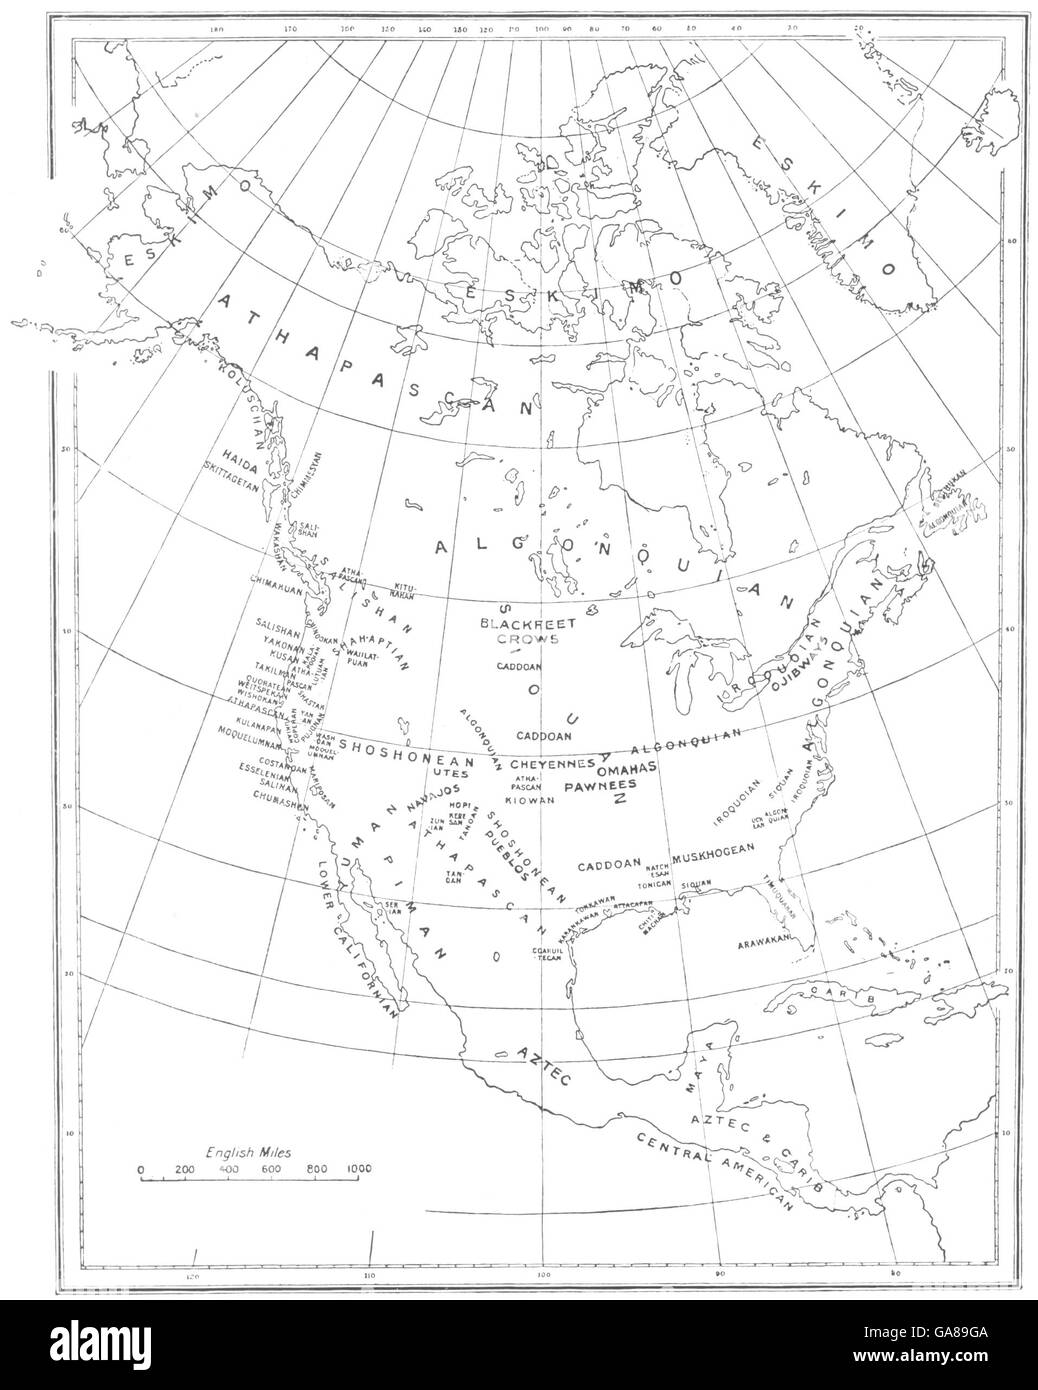 & CENTRAL NORTH AMERICA: Kartenskizze zeigt die Verteilung der Rassen, 1900 Stockfoto